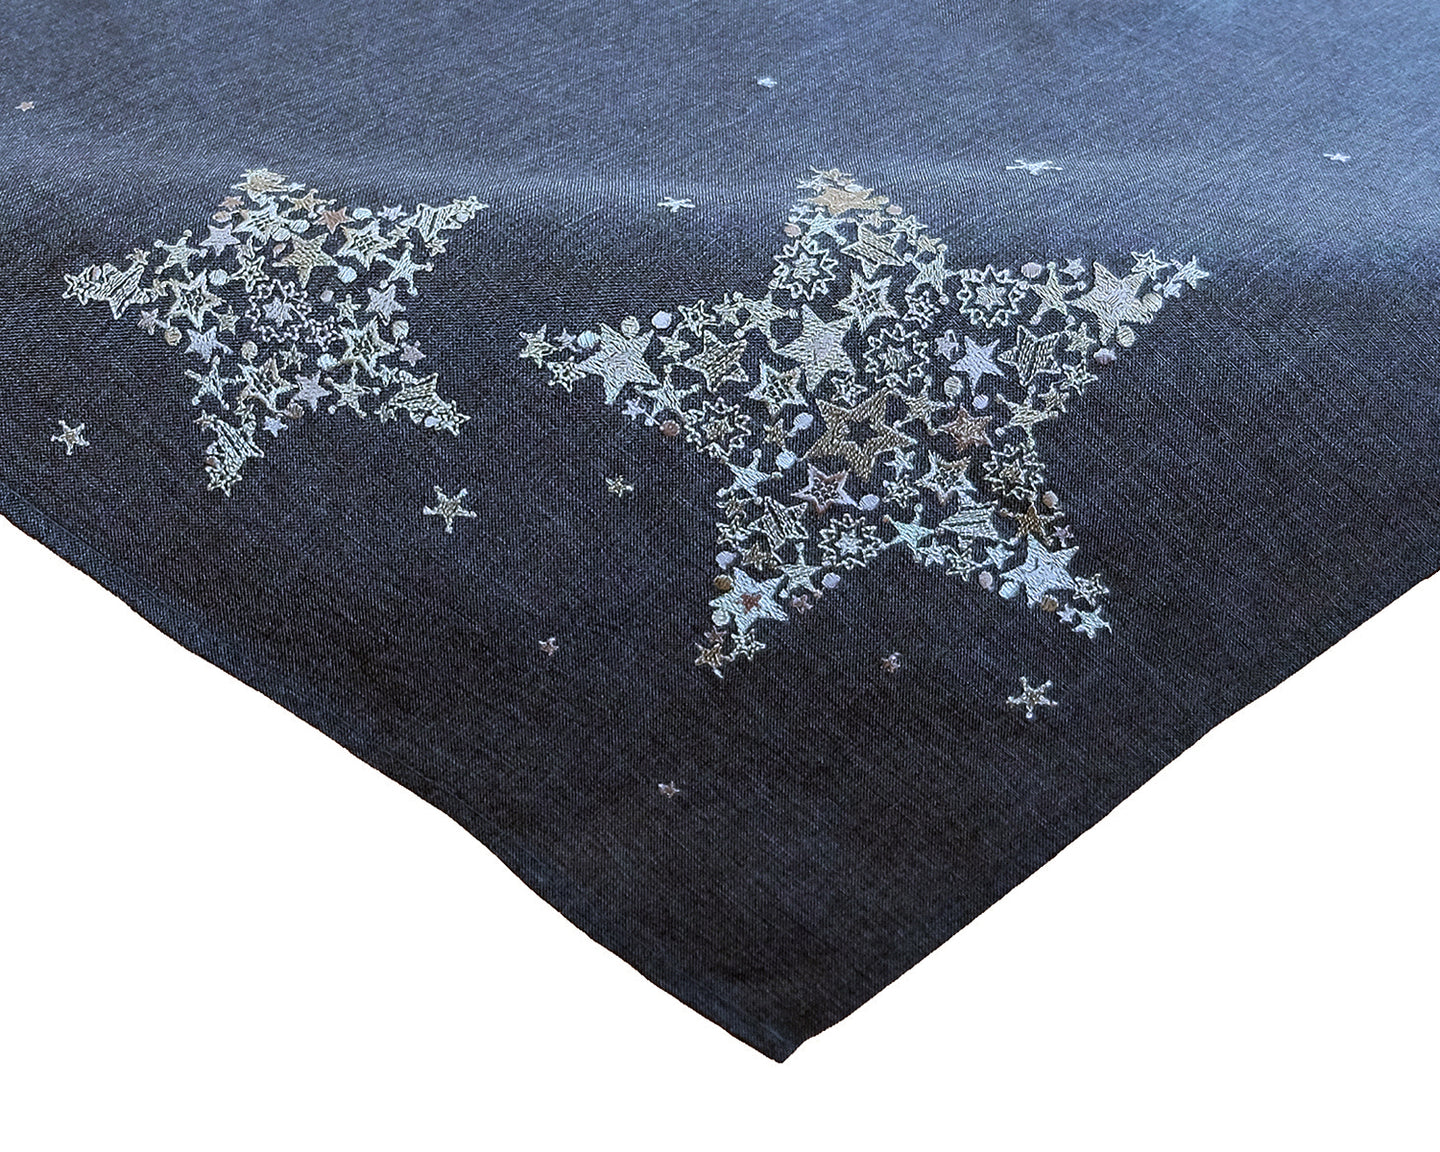 Tischdecke 85x85 cm Sternen Zauber in anthrazit mit bezaubernder Stickerei in silber - ein Eyecatcher in Herbst Winter Weihnachten